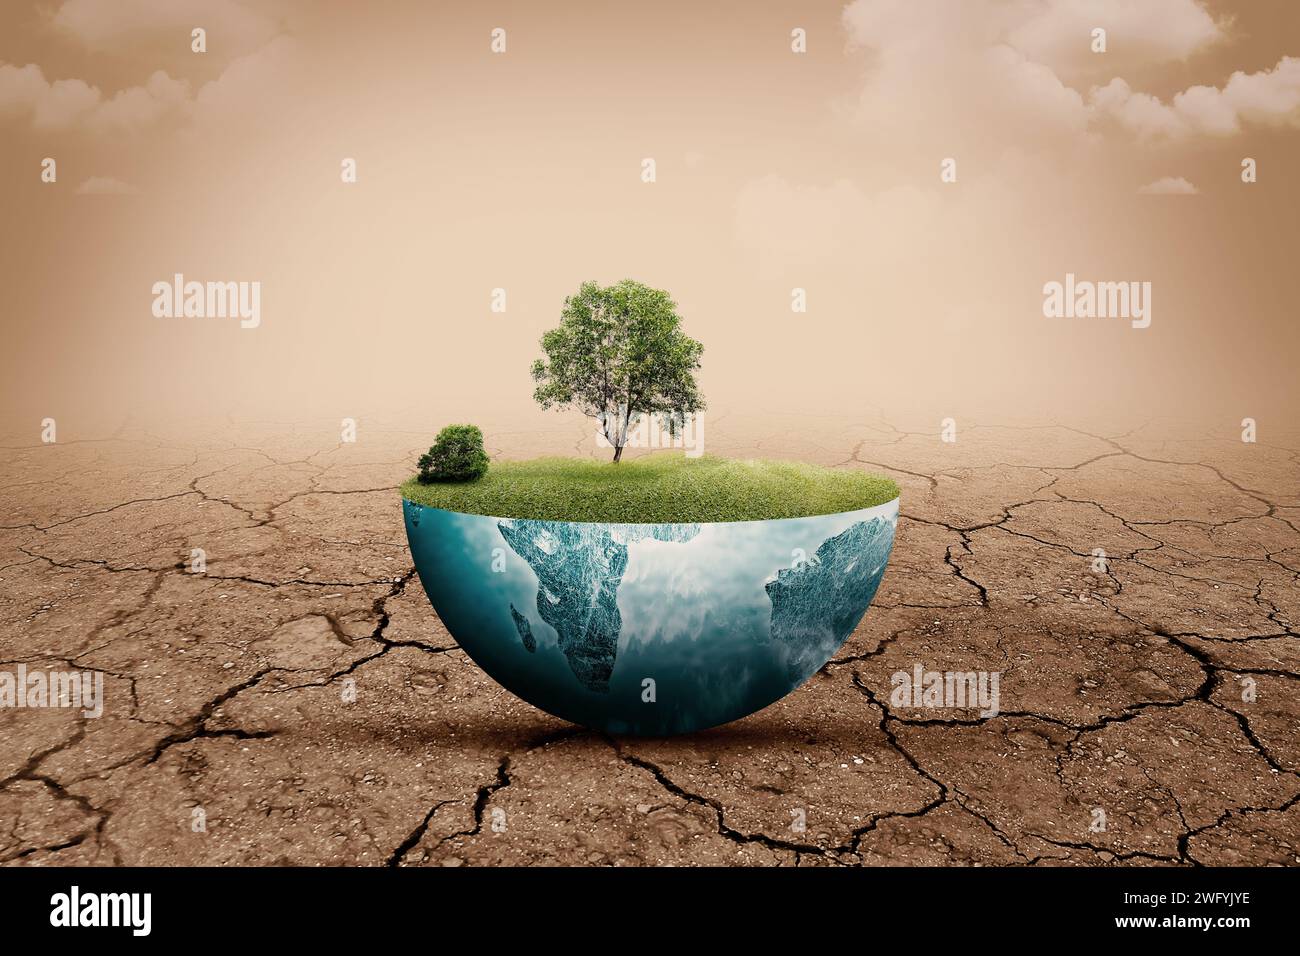 Un árbol crecido en tierra fértil con un fondo de campo de sequía. Concepto de medio ambiente y cambio climático Foto de stock